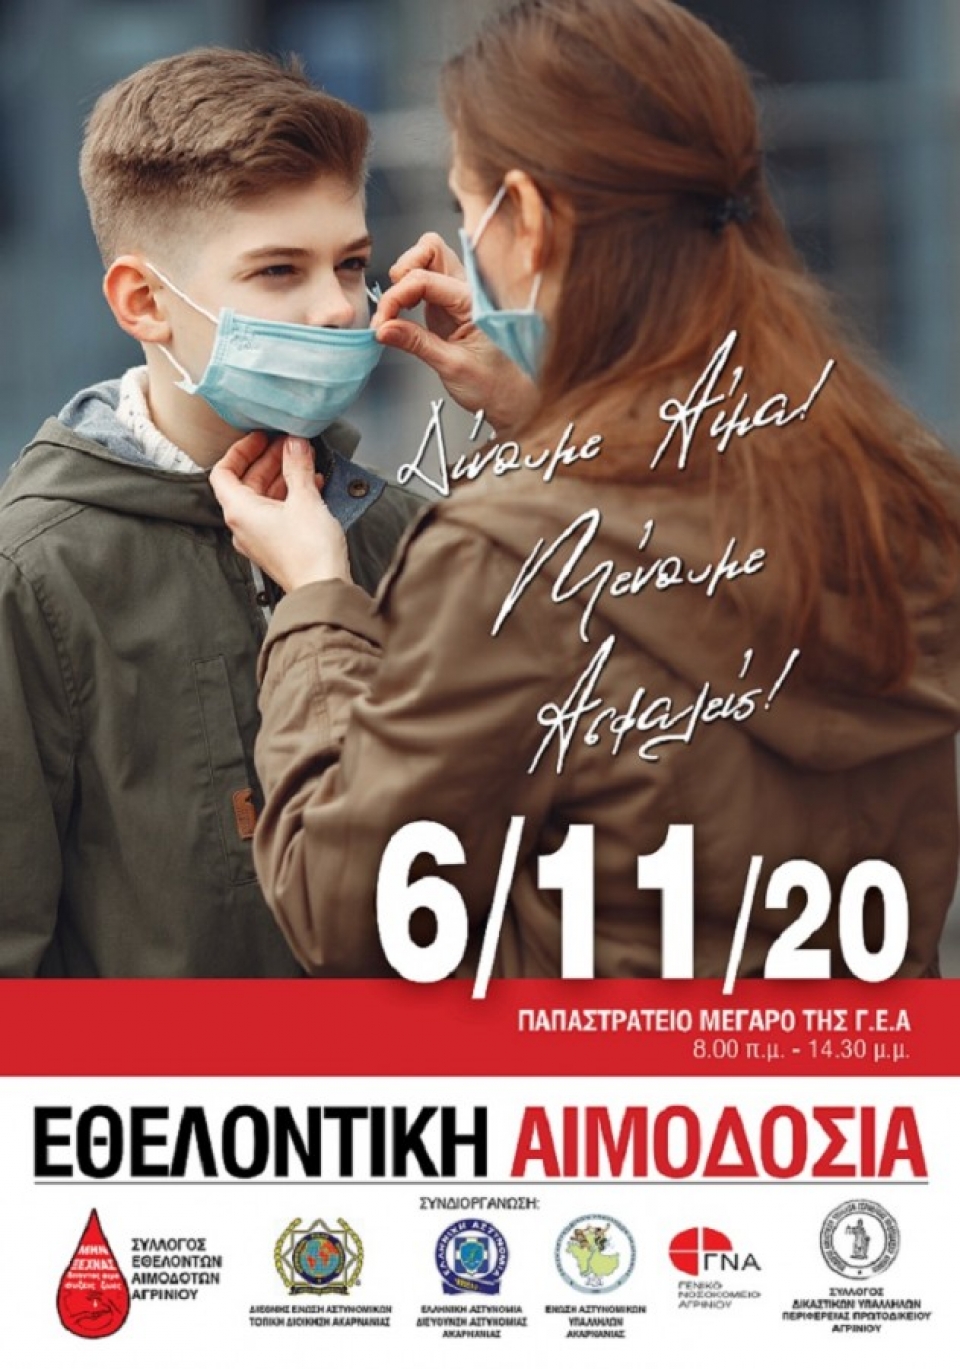 Αγρίνιο: Εθελοντική αιμοδοσία την Παρασκευή 6/11/2020 στο Παπαστράτειο Μέγαρο